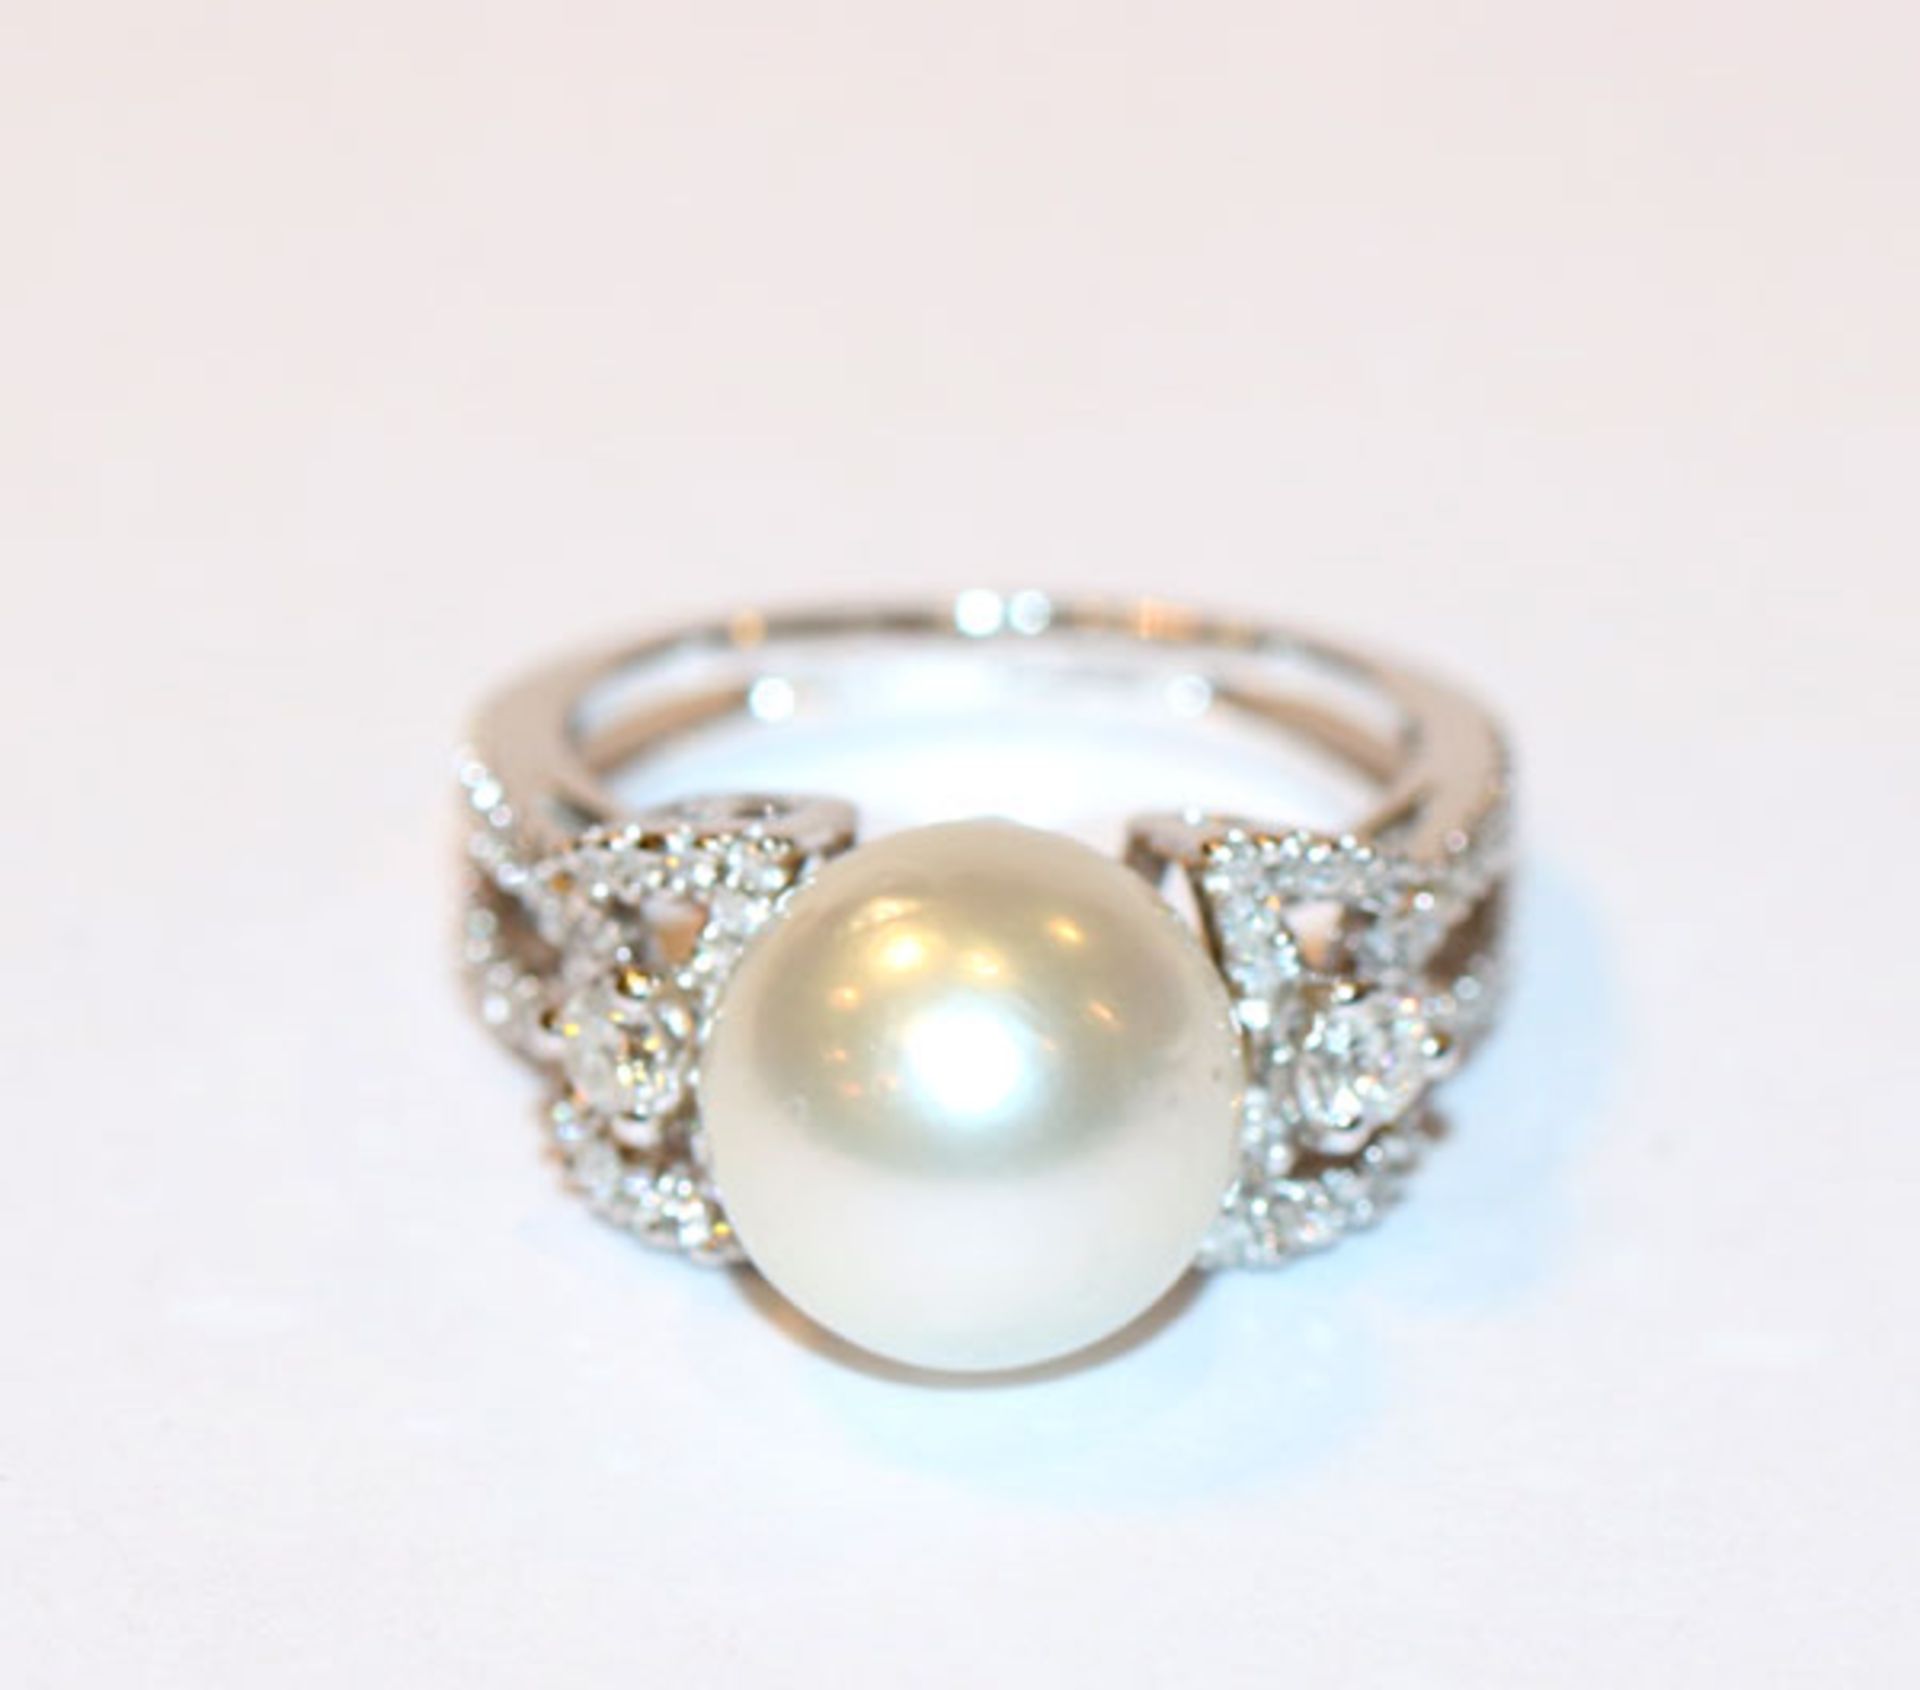 18 k Weißgold Ring mit Diamanten besetzt, zus. 0,63 ct., und einer großen Perle, Gr. 55, schöne